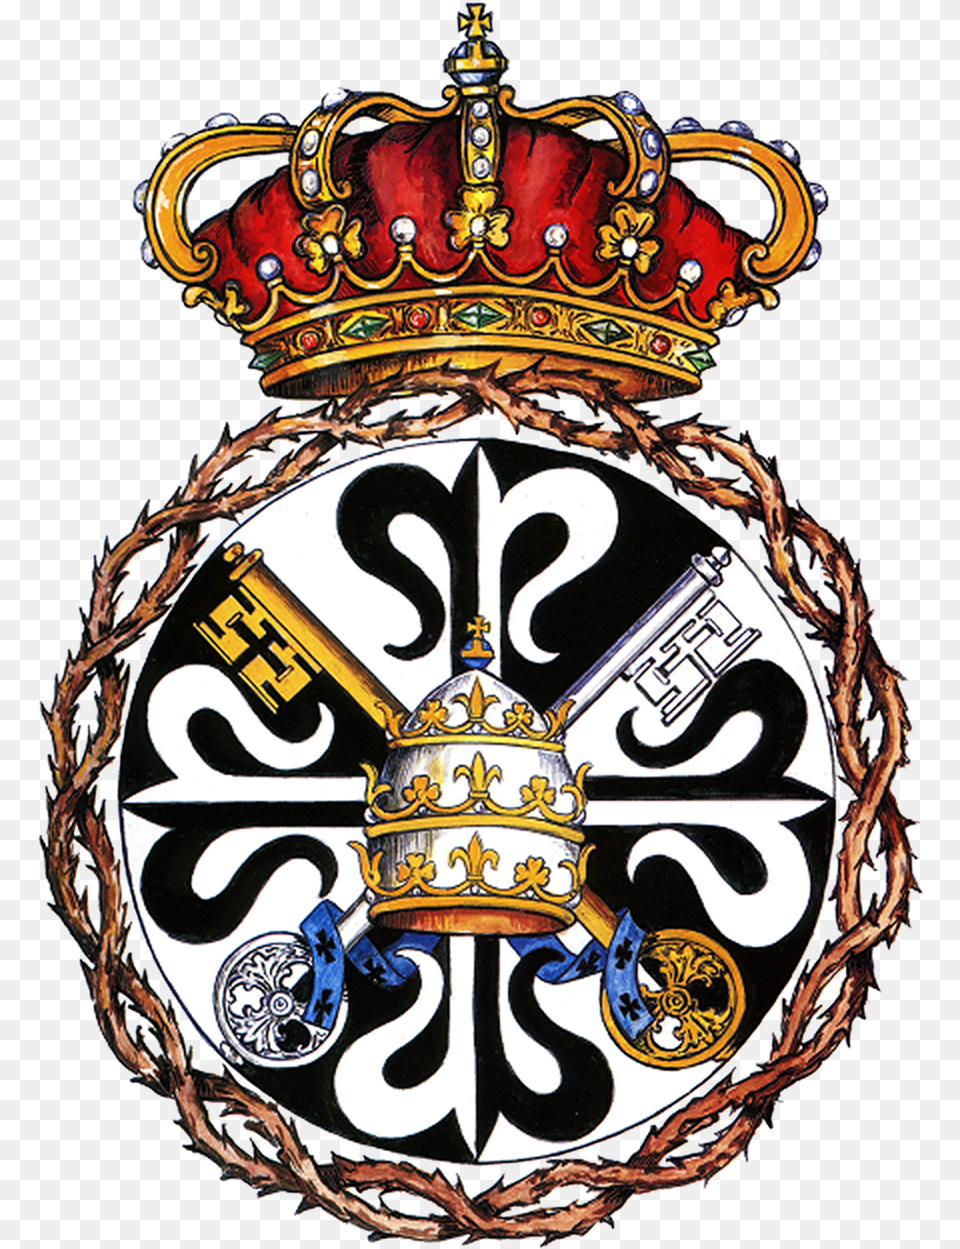 Escudo Basilica Esperanza Malaga, Badge, Emblem, Logo, Symbol Png Image